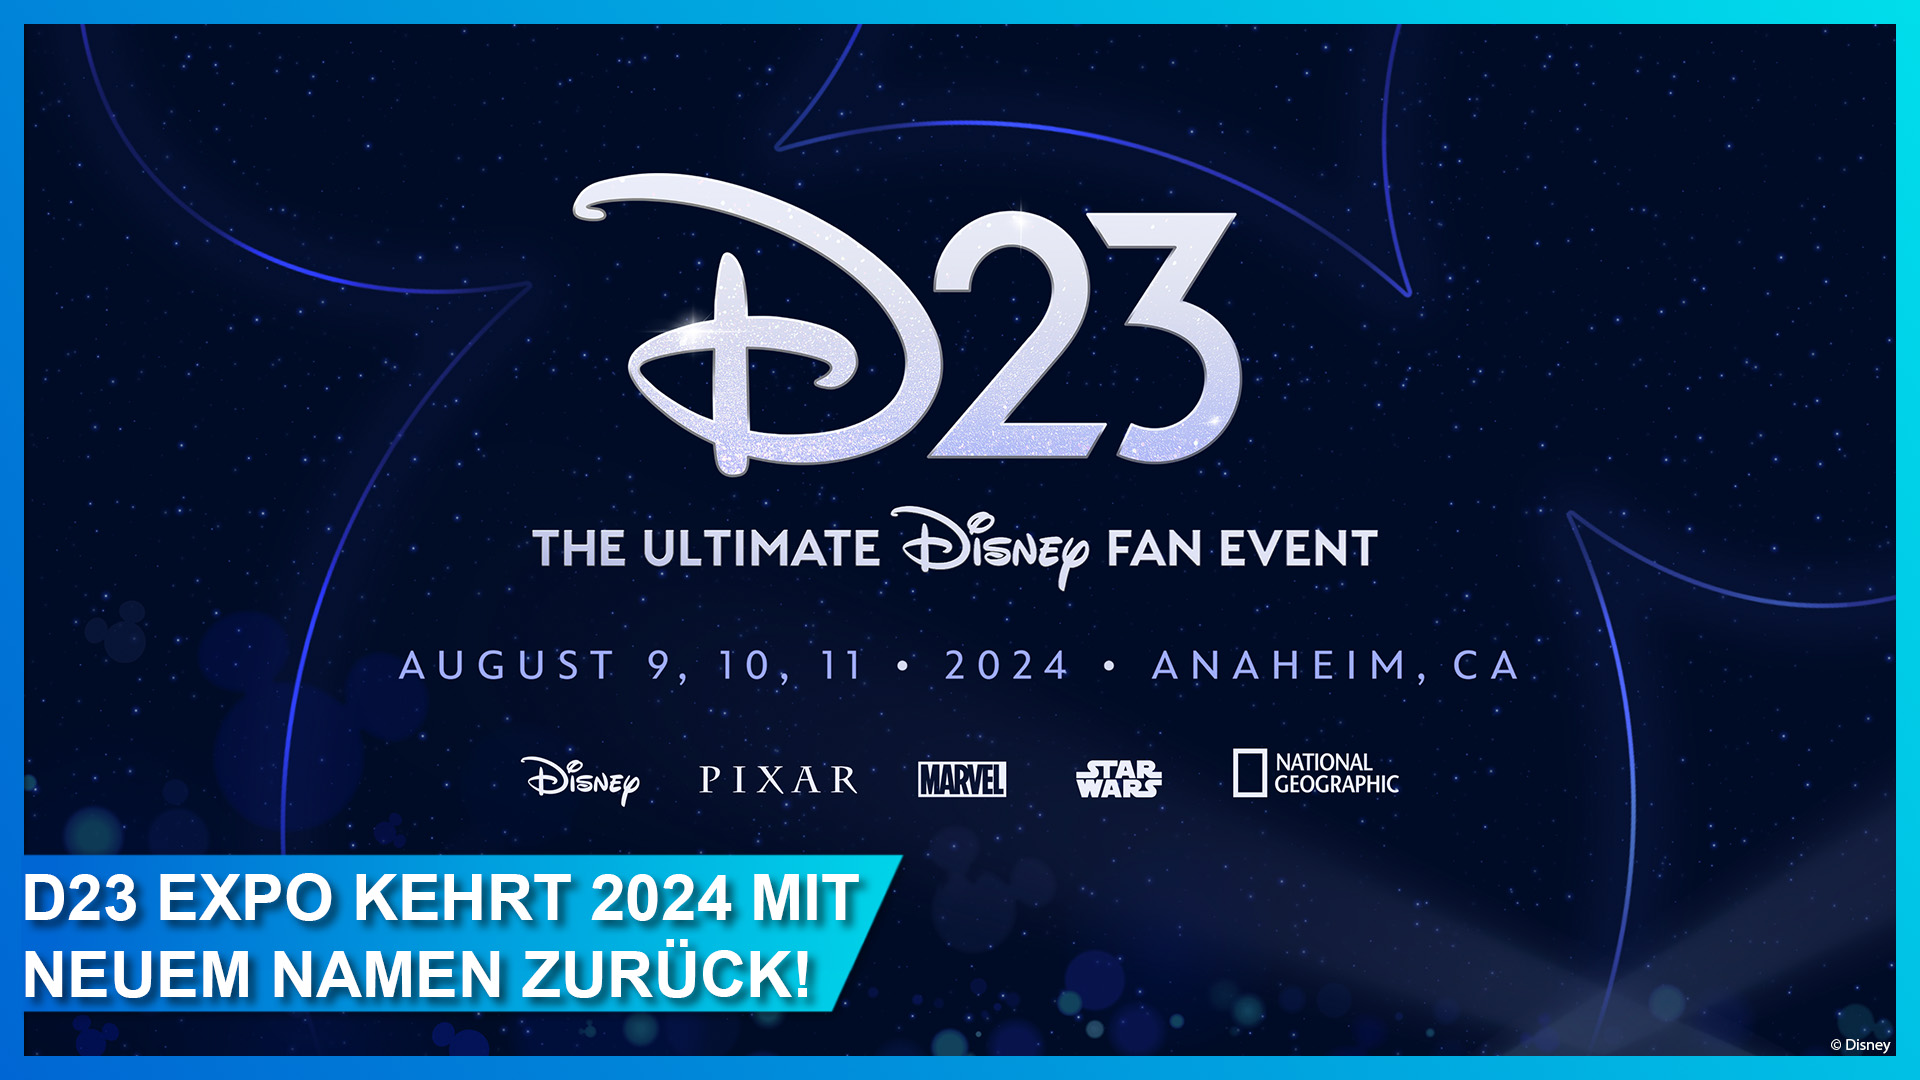 D23 Expo 2024 im August 2024 in Anaheim, Kalifornien